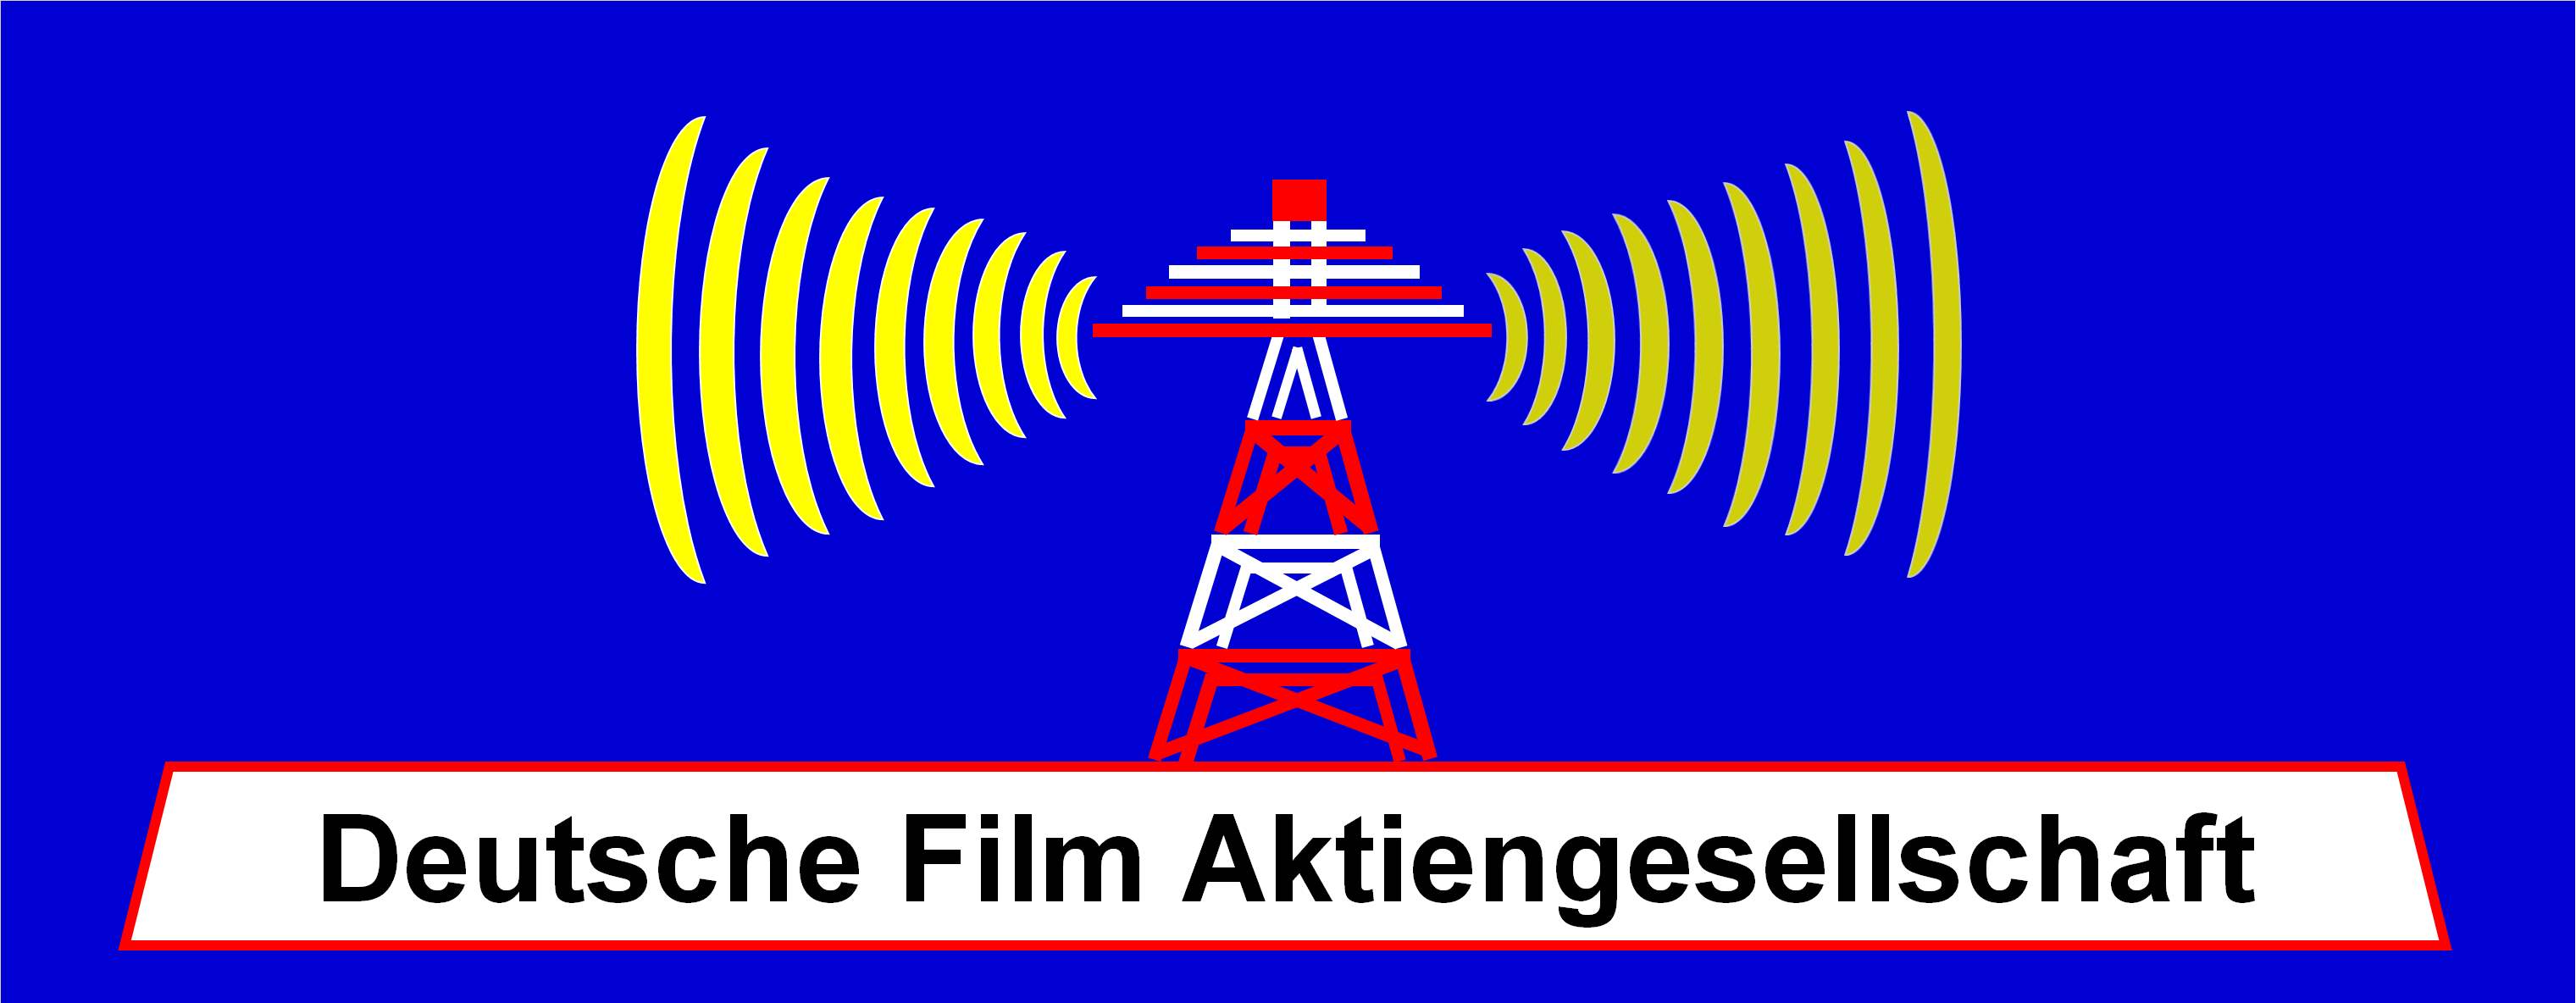 DEFA - Deutsche Film Aktiengesellschaft